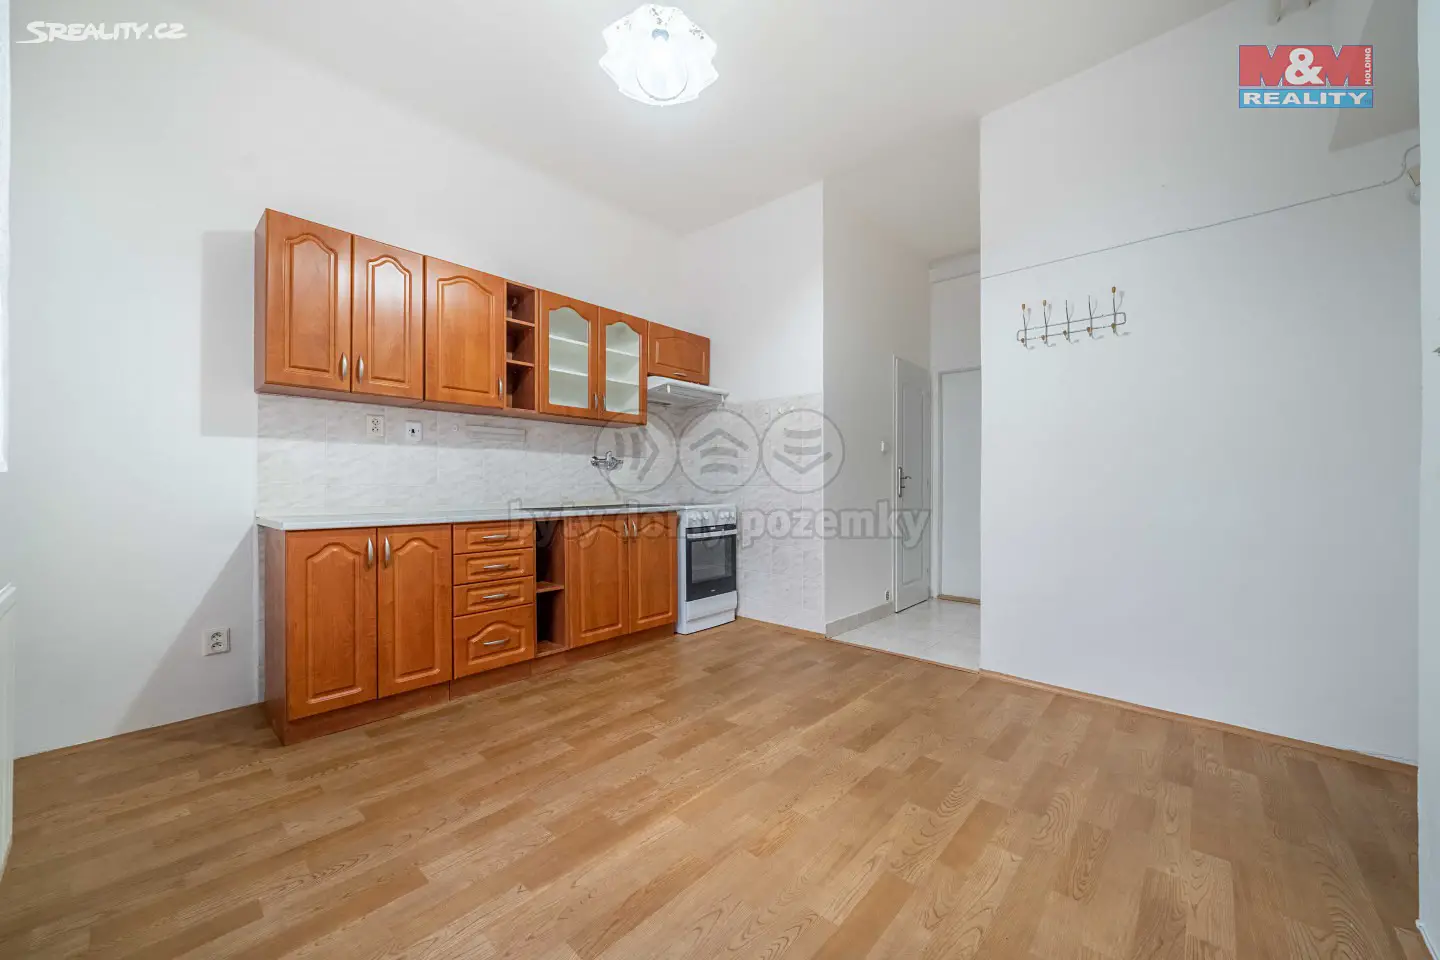 Pronájem bytu 1+1 35 m², Plzeň - Božkov, okres Plzeň-město